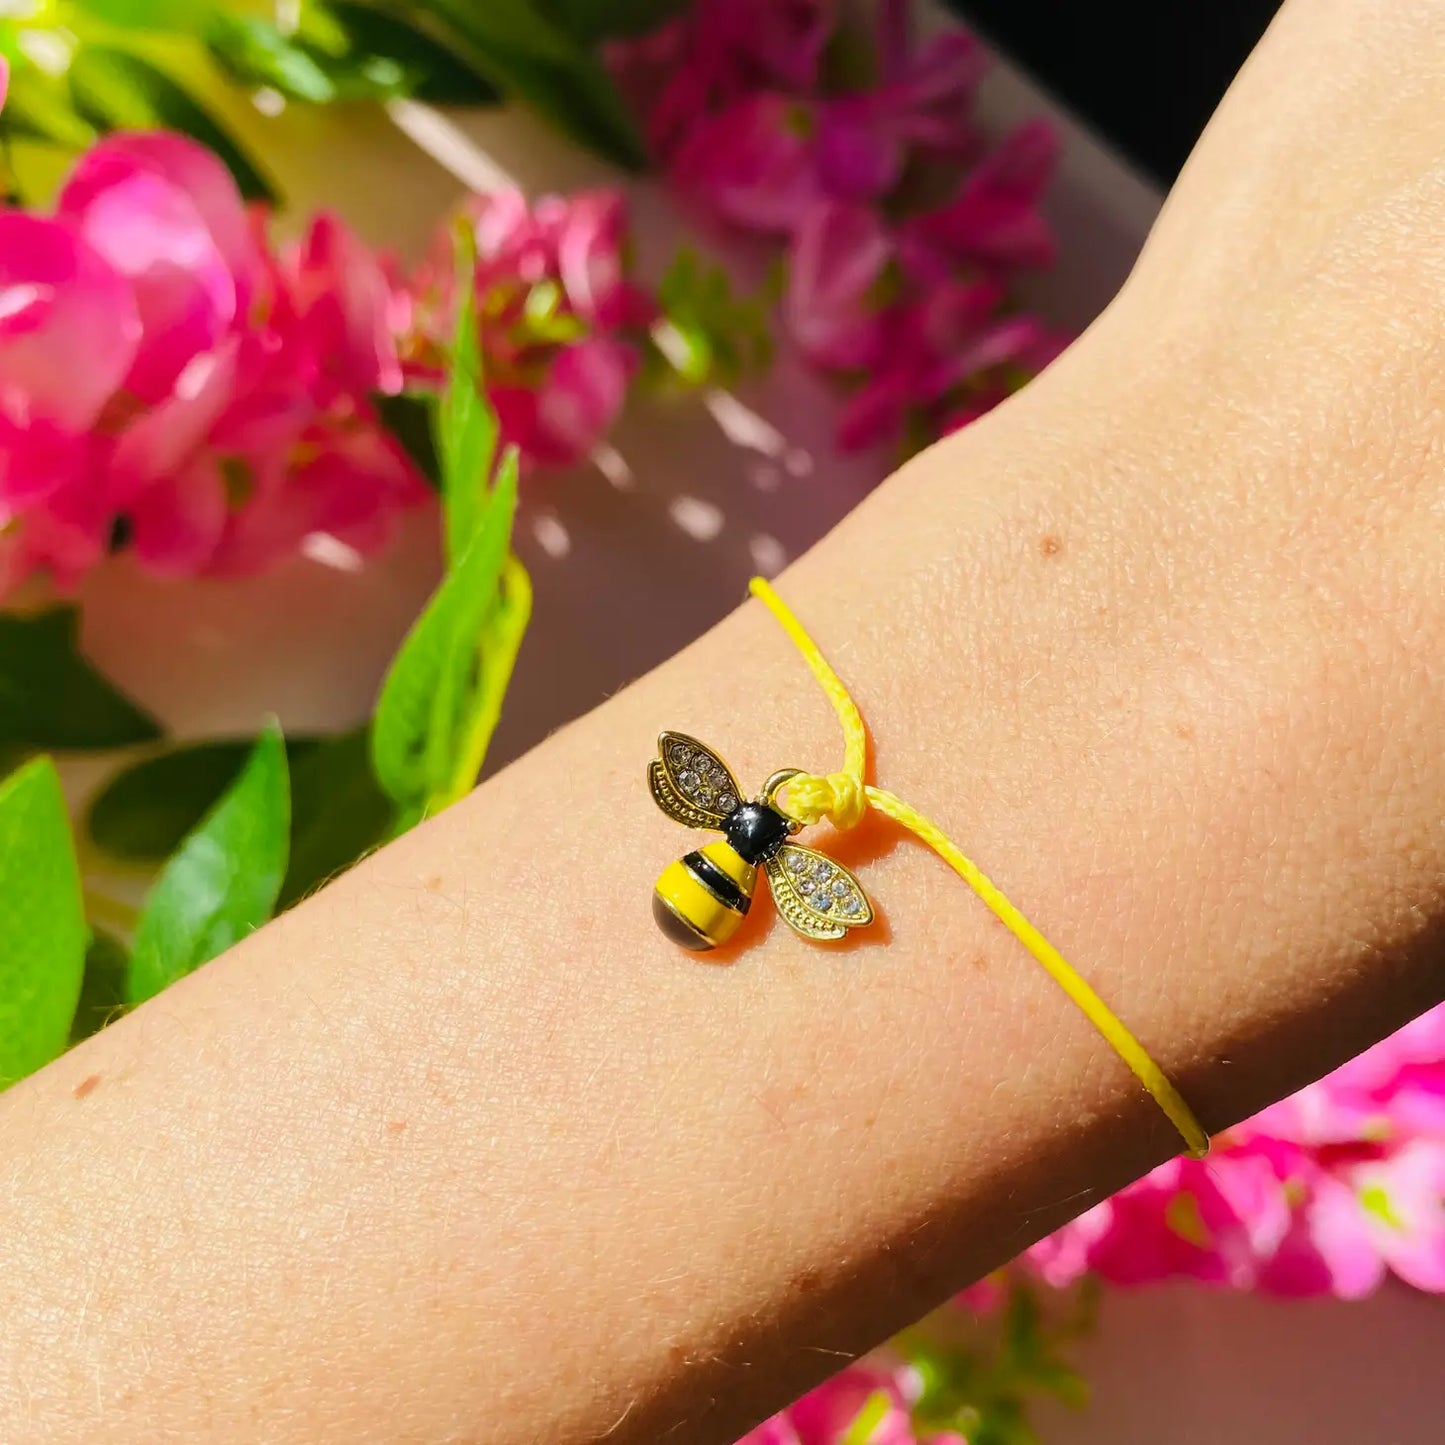 The Little Bee Bracelet